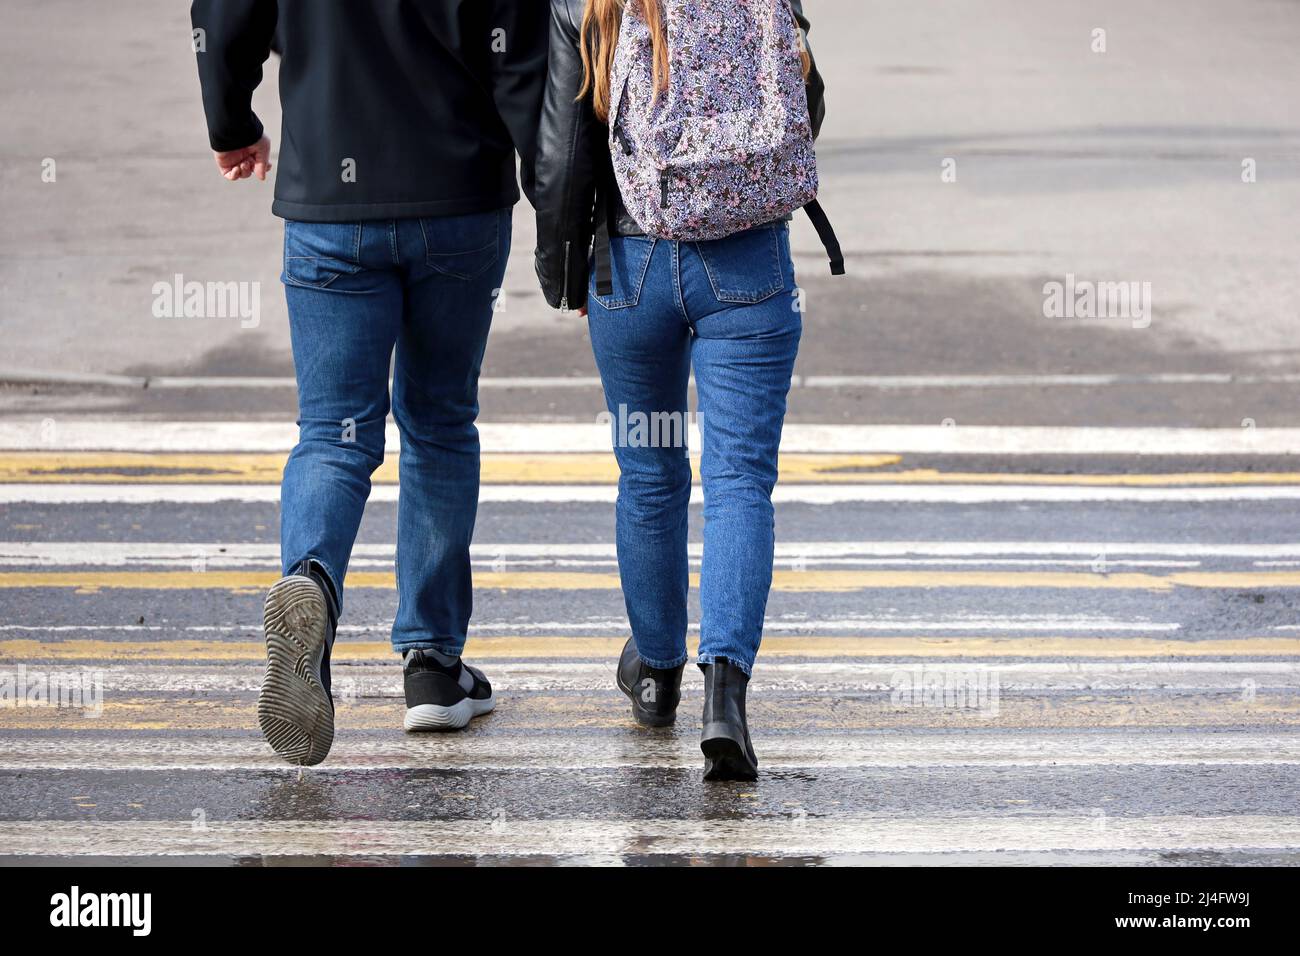 Couple en jeans marche sur la passerelle en tenant les mains. Marquage zébré de la route, personnes sur passage de côté humide dans les conditions météorologiques printanières, concept de sécurité de la rue Banque D'Images